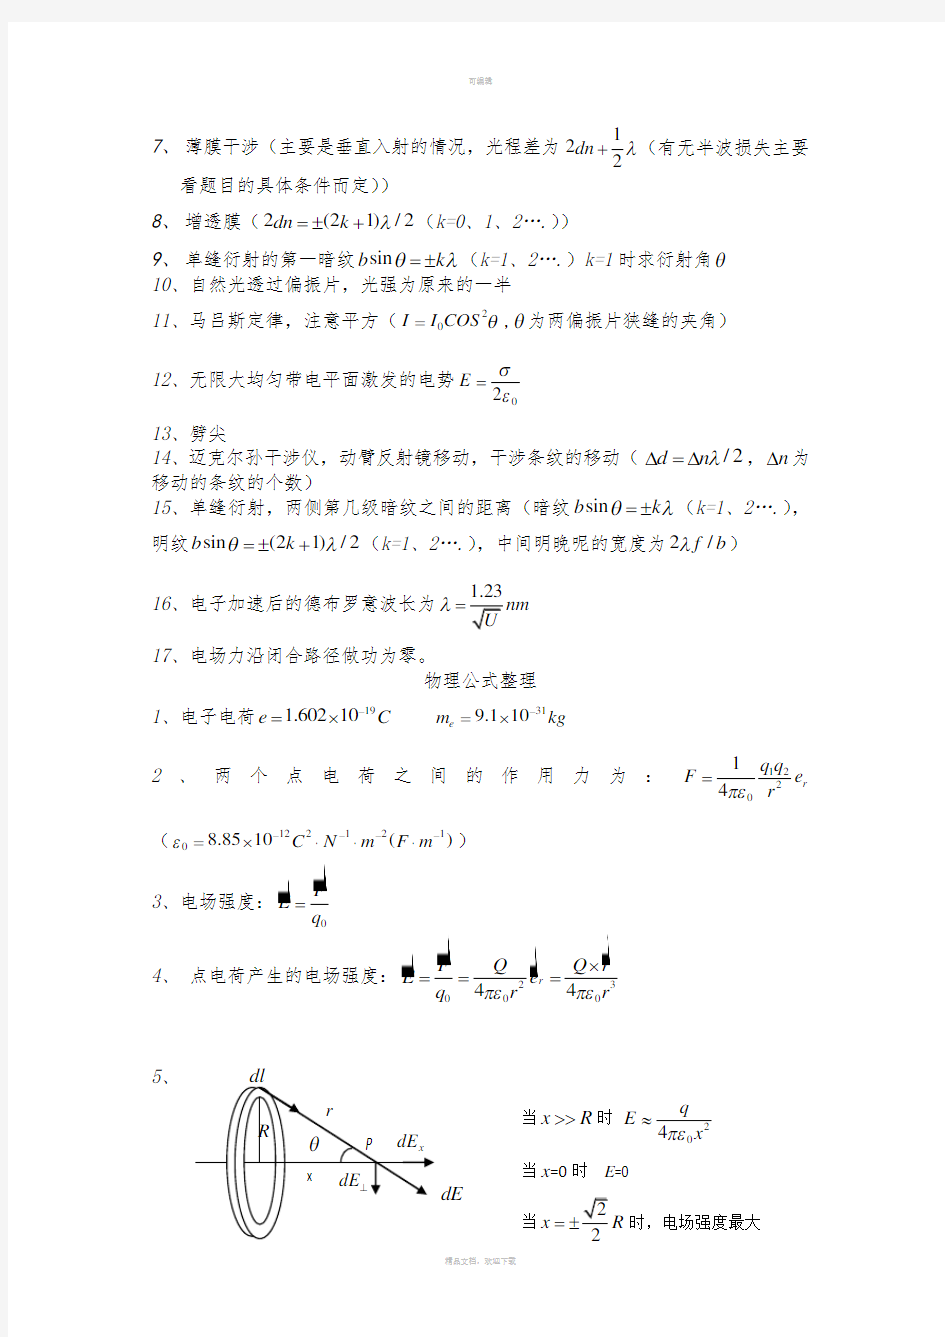 物理学教程(第二版)-马文蔚下册公式原理整理(1)